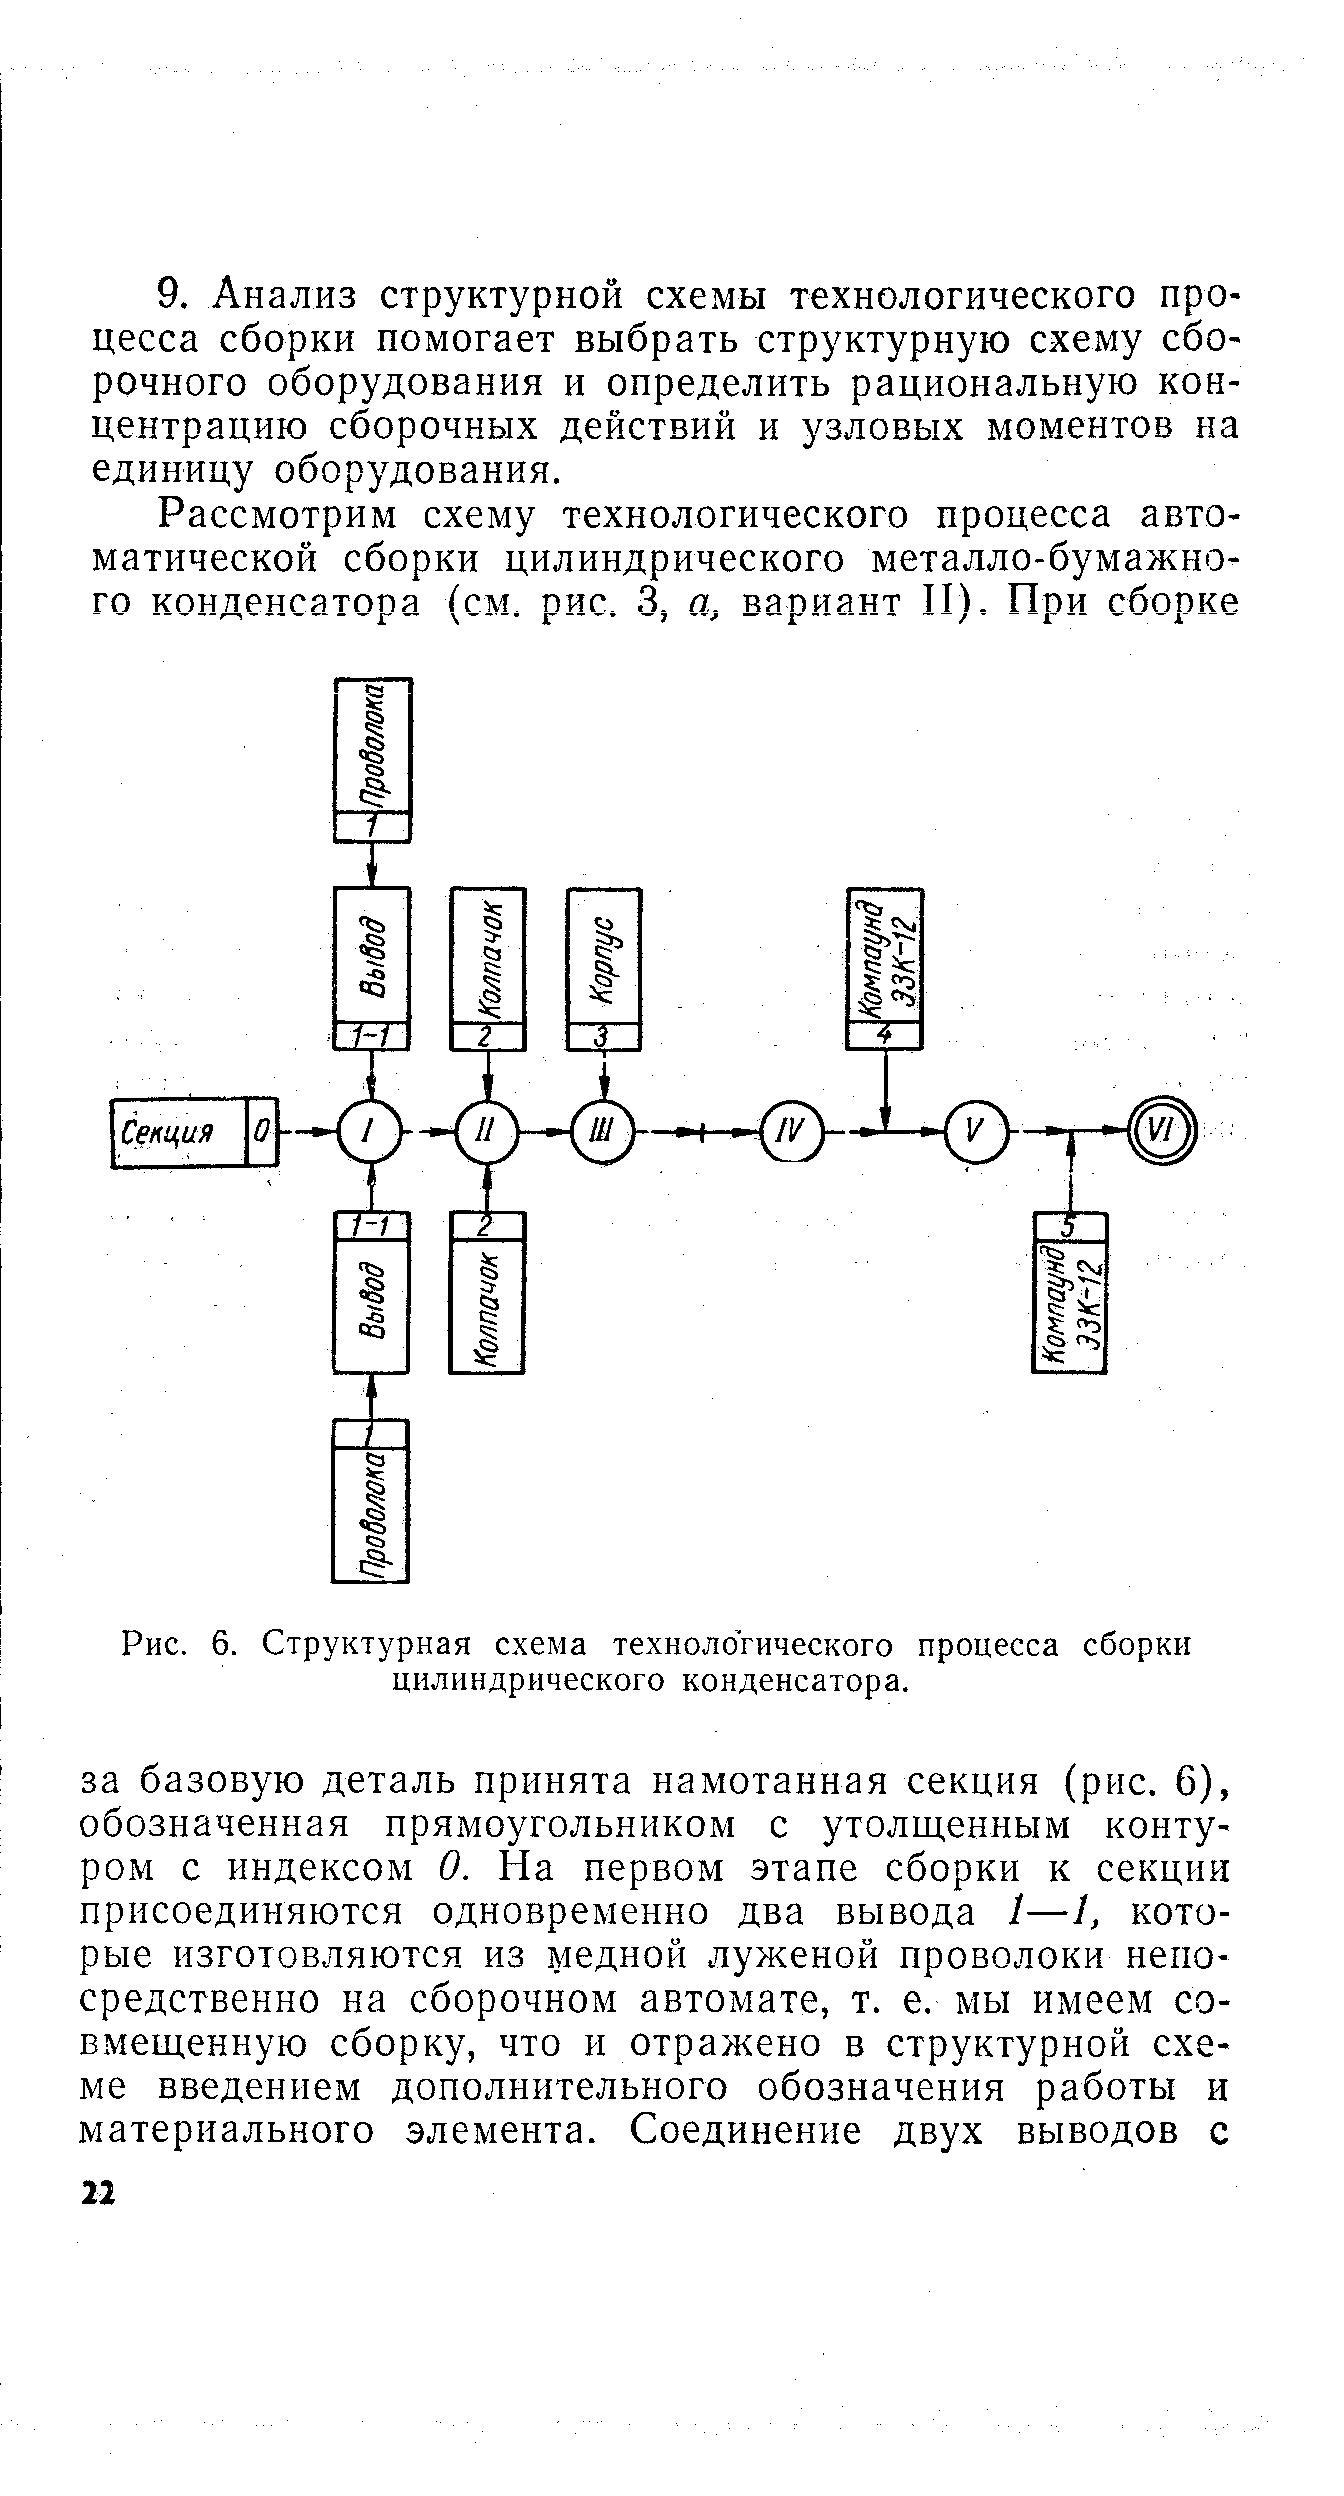 Рис. 6. Структурная схема технологического процесса сборки цилиндрического конденсатора.
